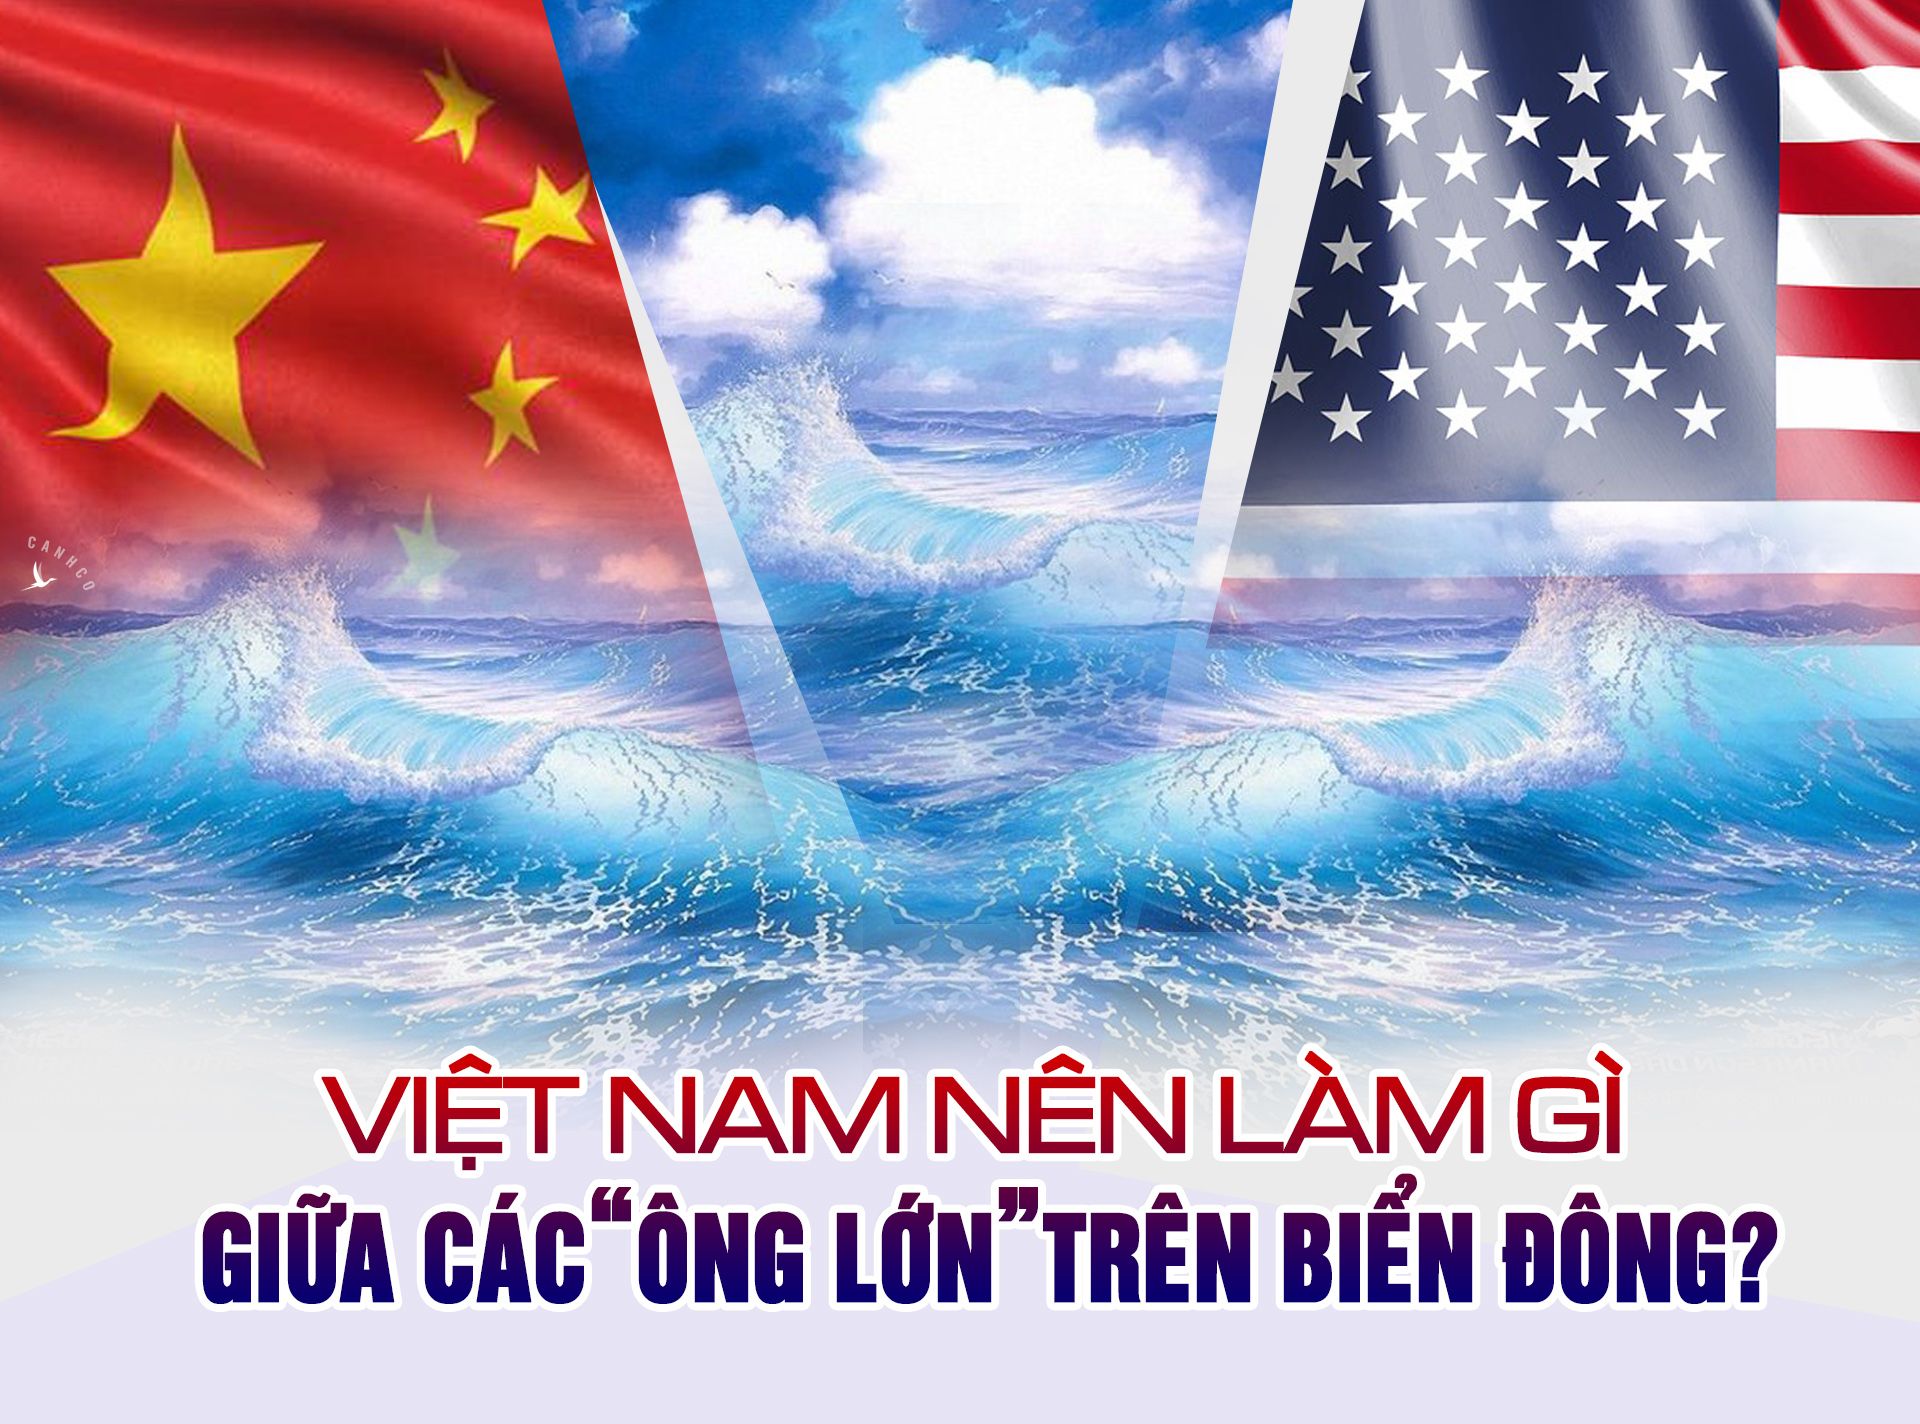 Việt Nam nên làm gì giữa các “ông lớn” trên Biển Đông?